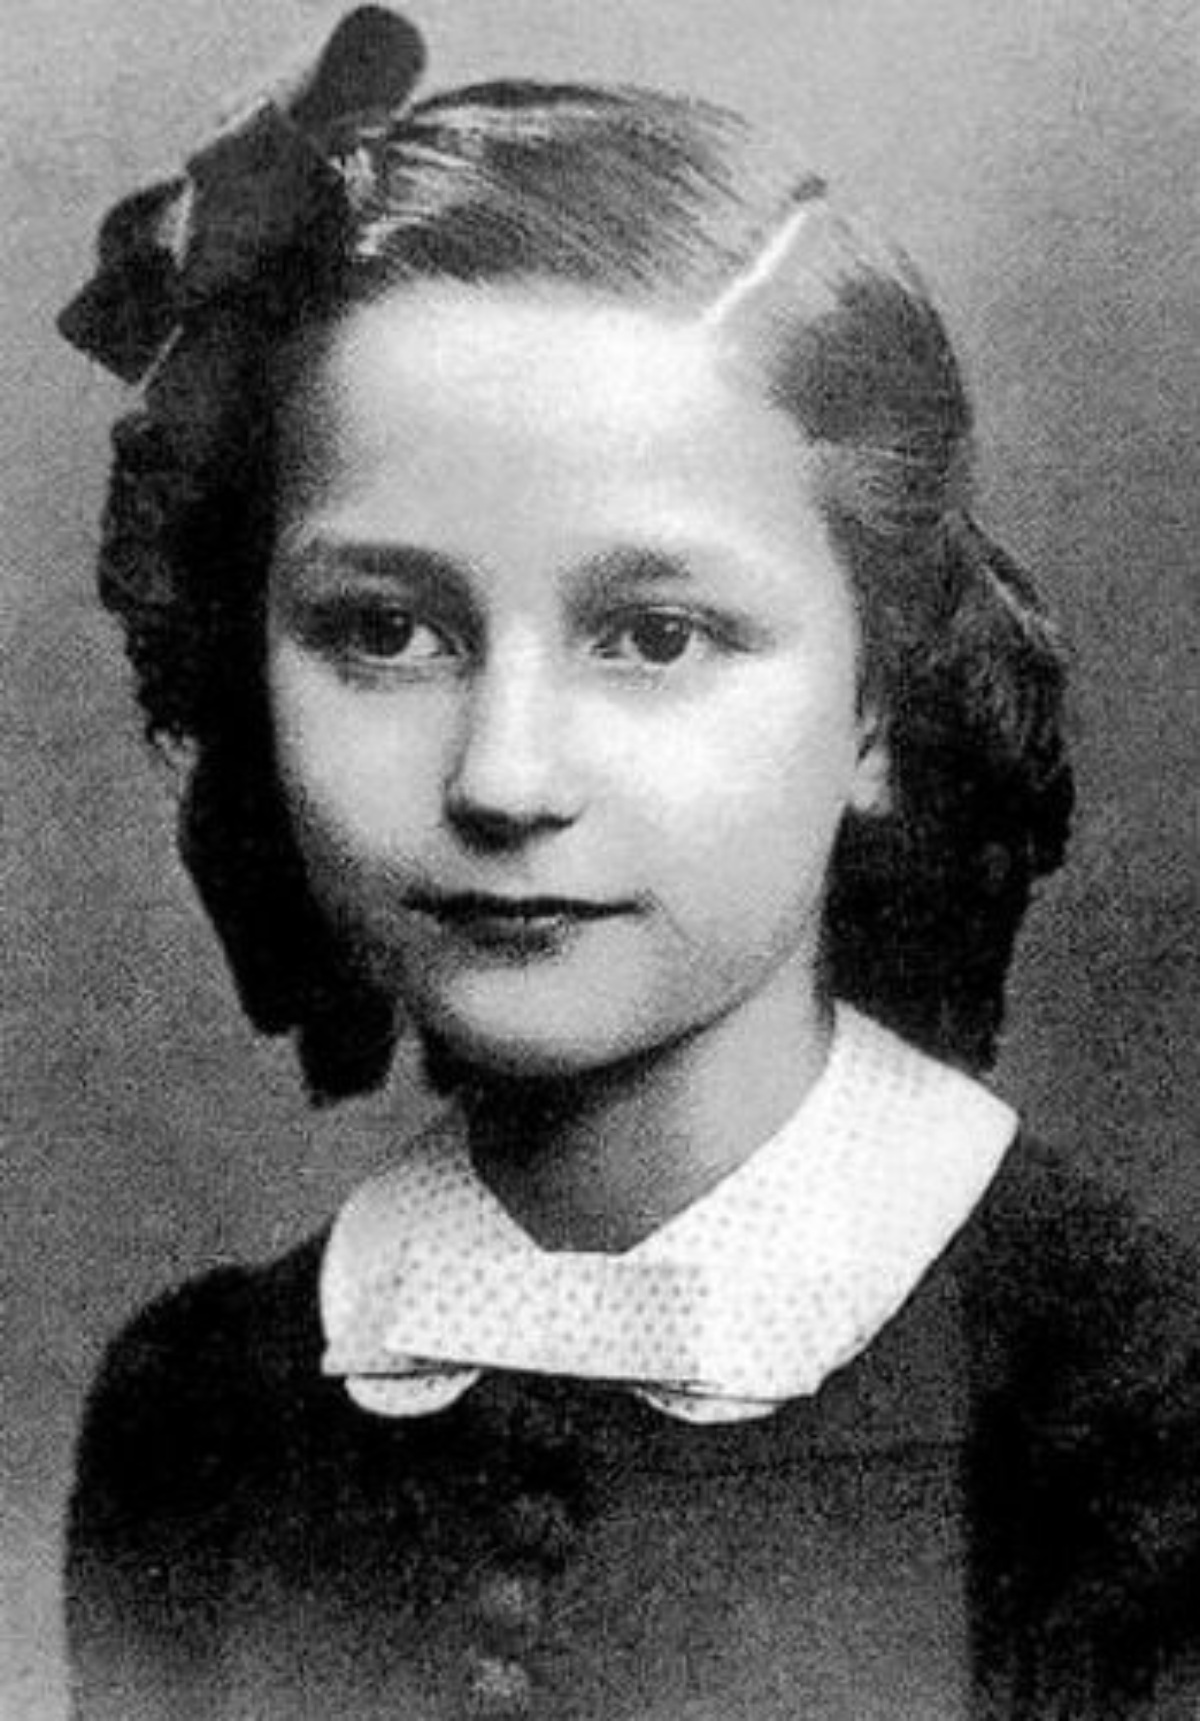 Montserrat Caballé as a child